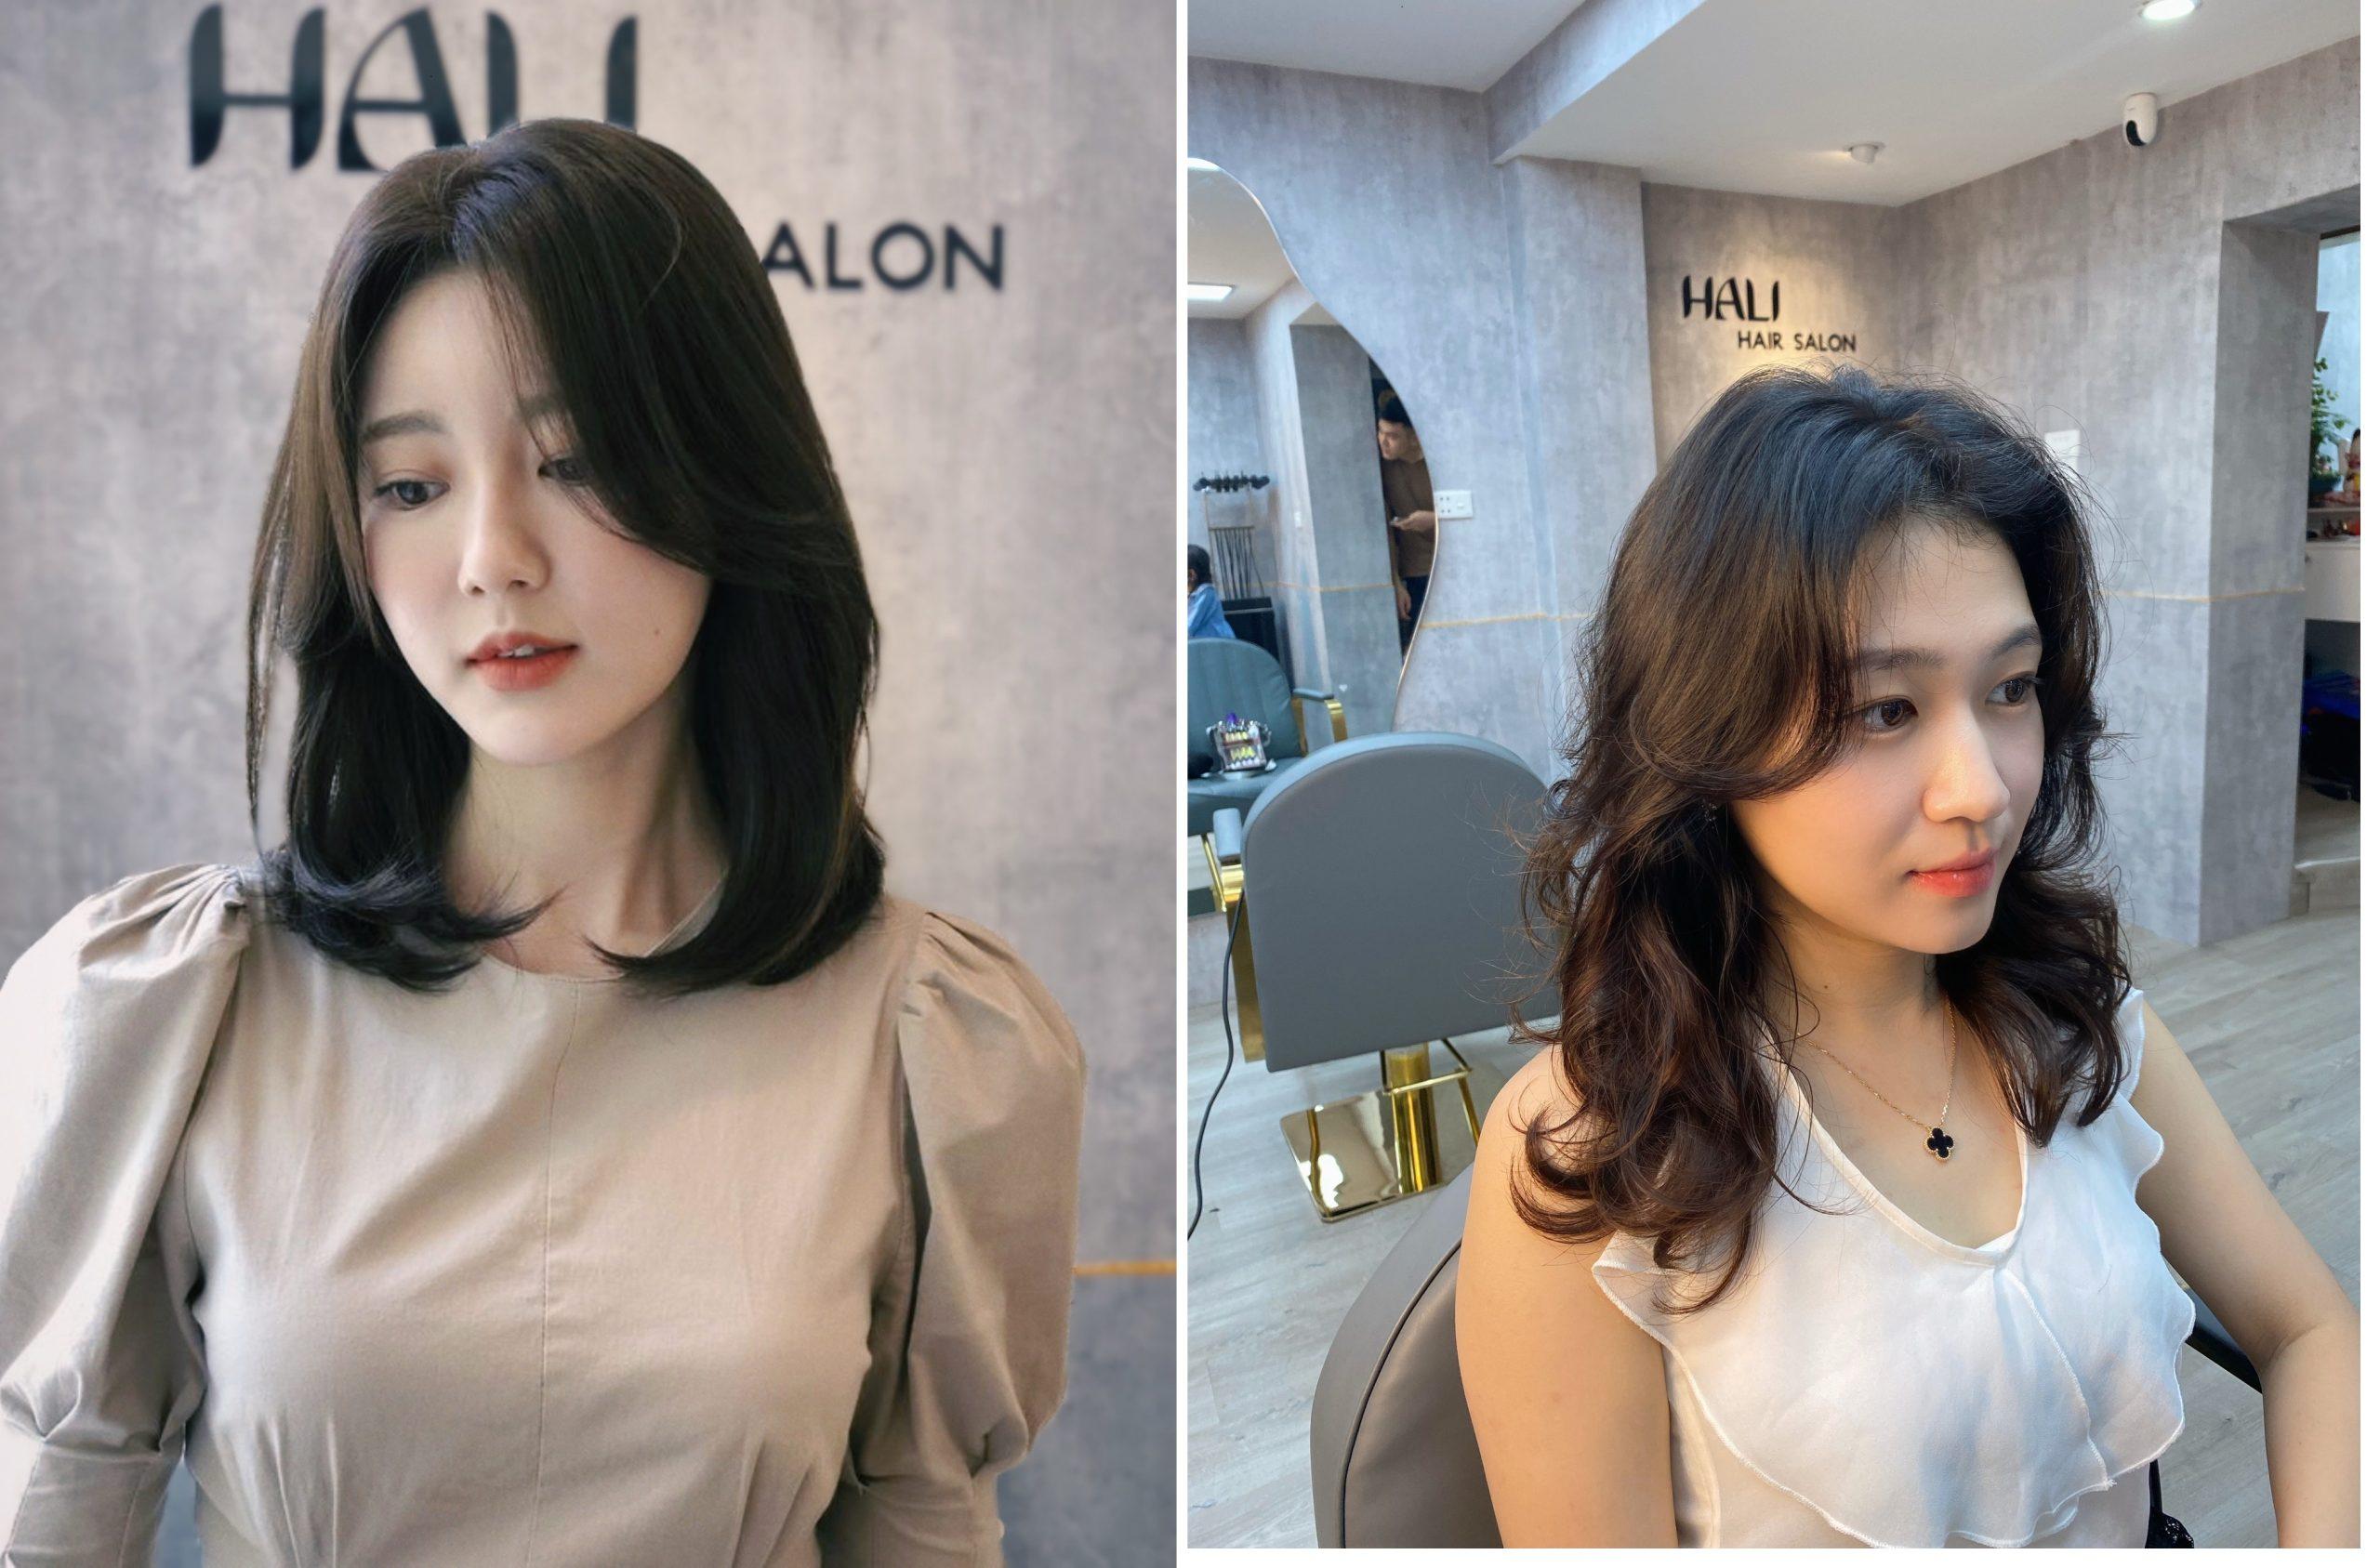 Đến ngay salon làm tóc tại Hà Nội để có một đầu tóc thật xinh đẹp nhé! Đội ngũ thợ chuyên nghiệp và nhiều kinh nghiệm sẽ giúp bạn biến hóa ngoạn mục với mái tóc. Hãy đến và cảm nhận ngay những trải nghiệm tuyệt vời tại salon của chúng tôi.